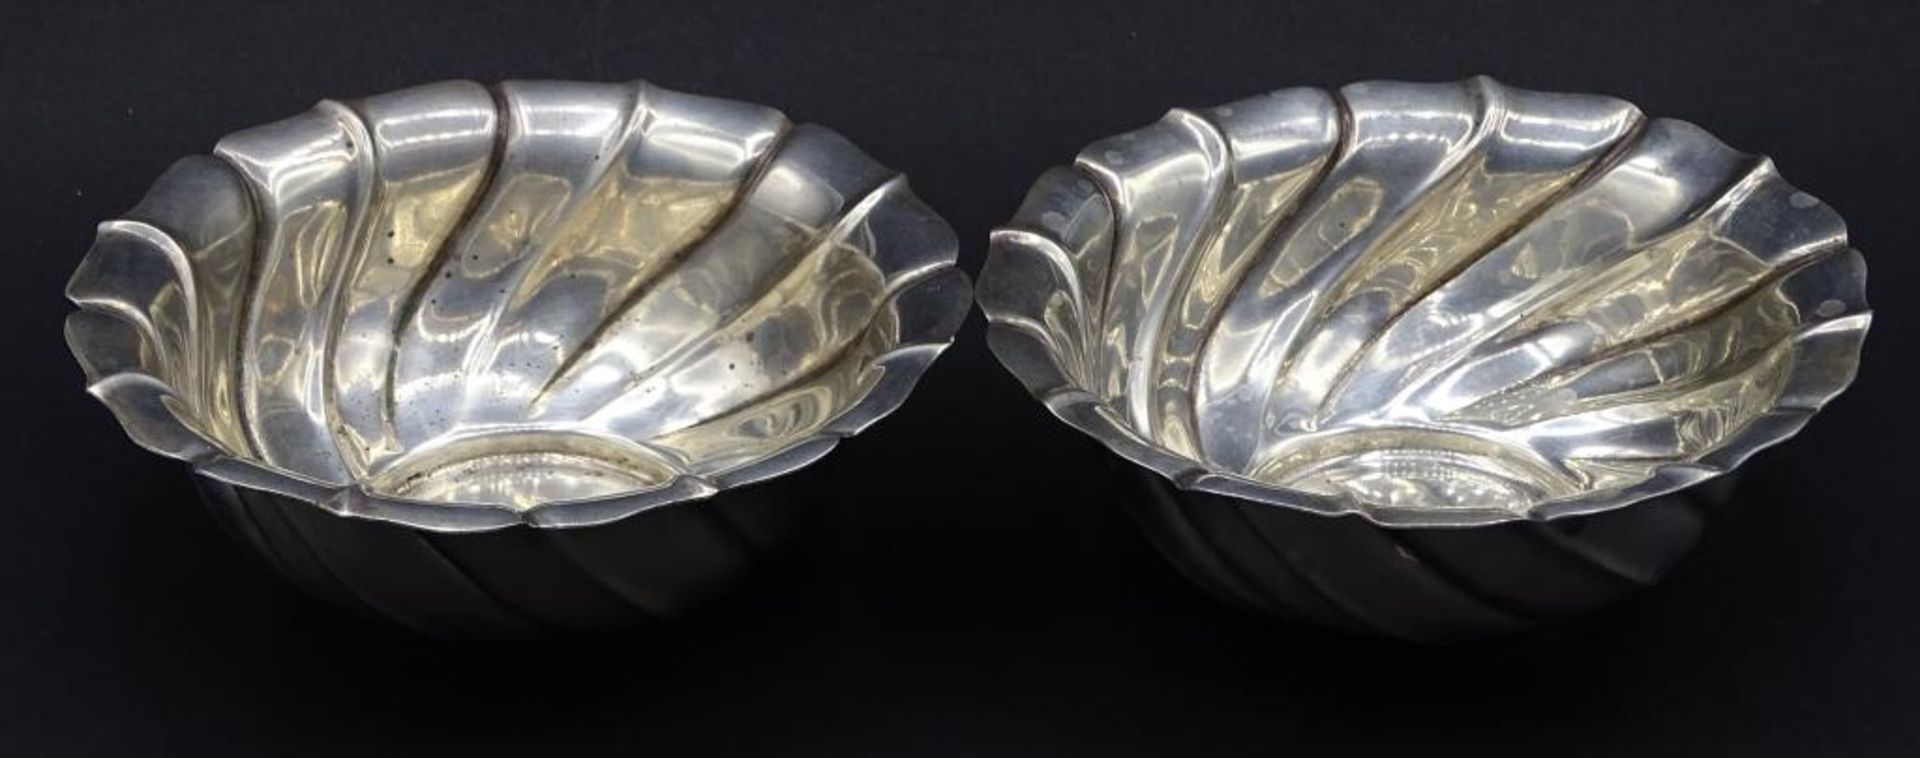 Zwei Silberschalen Silber 800/000,H-5,0cm, d-13,5cm, ges.Gew. 215gr.